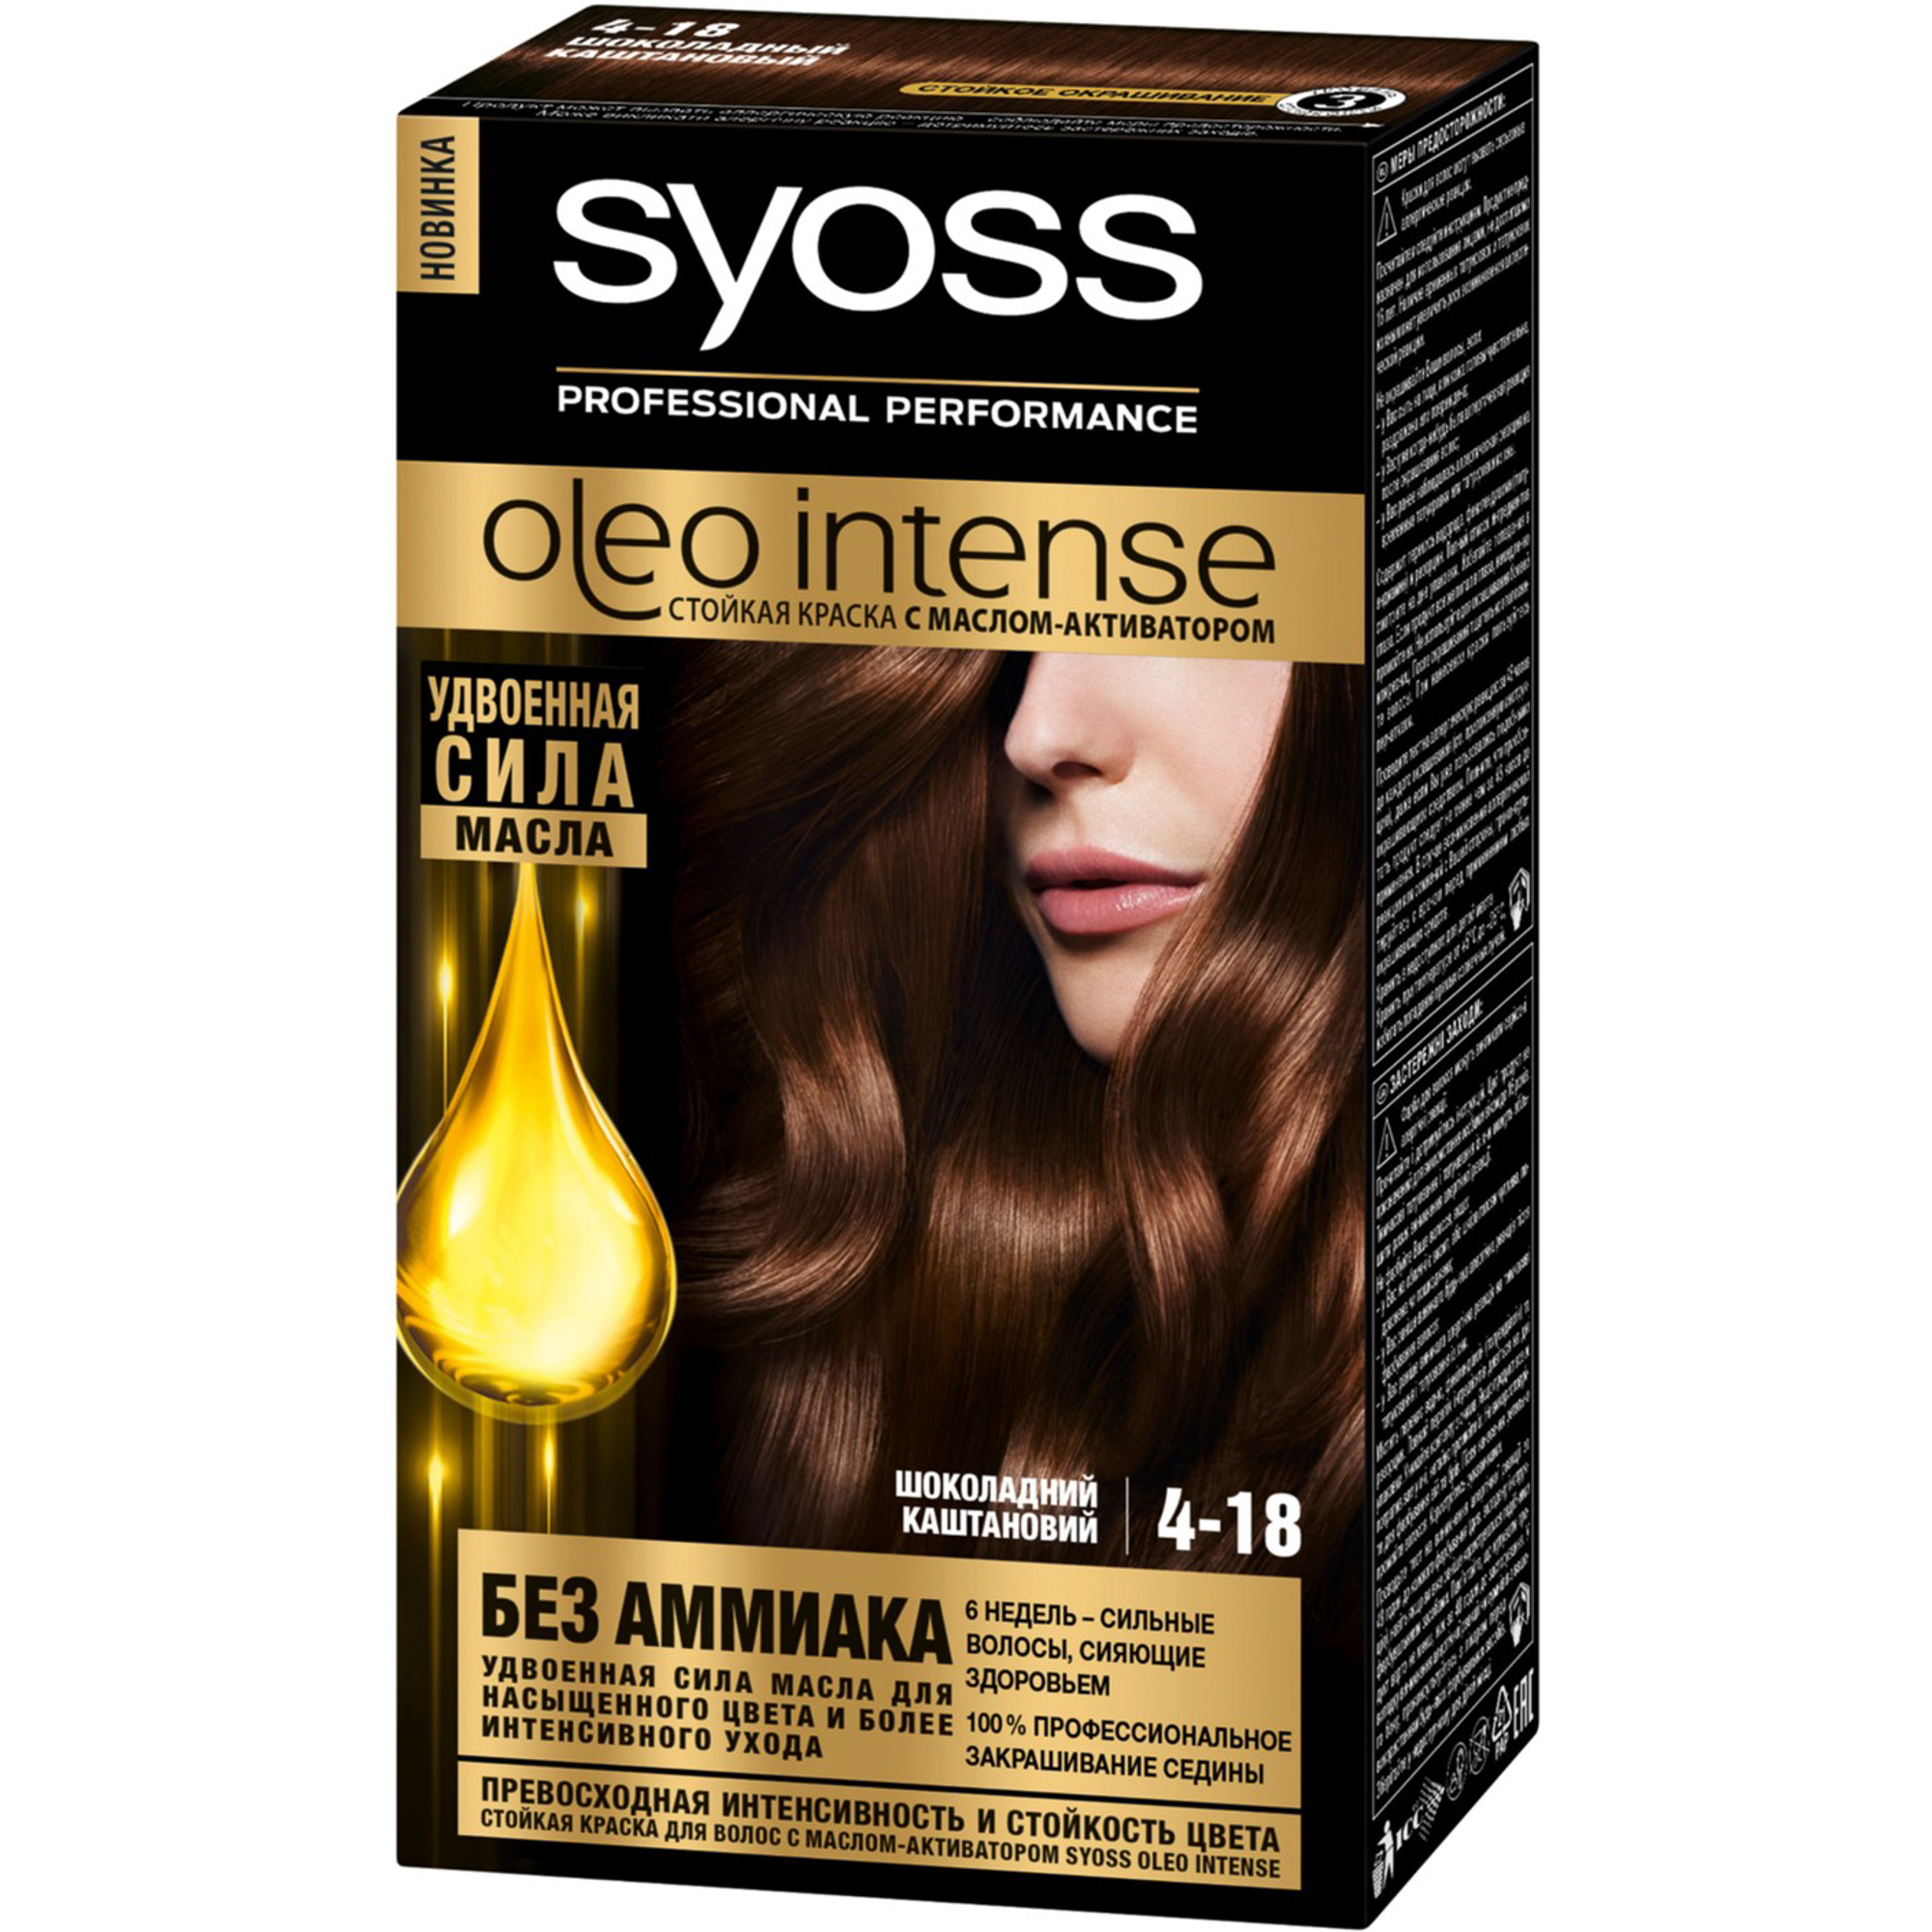 краска для волос syoss oleo intense 4-18 шоколадный каштановый